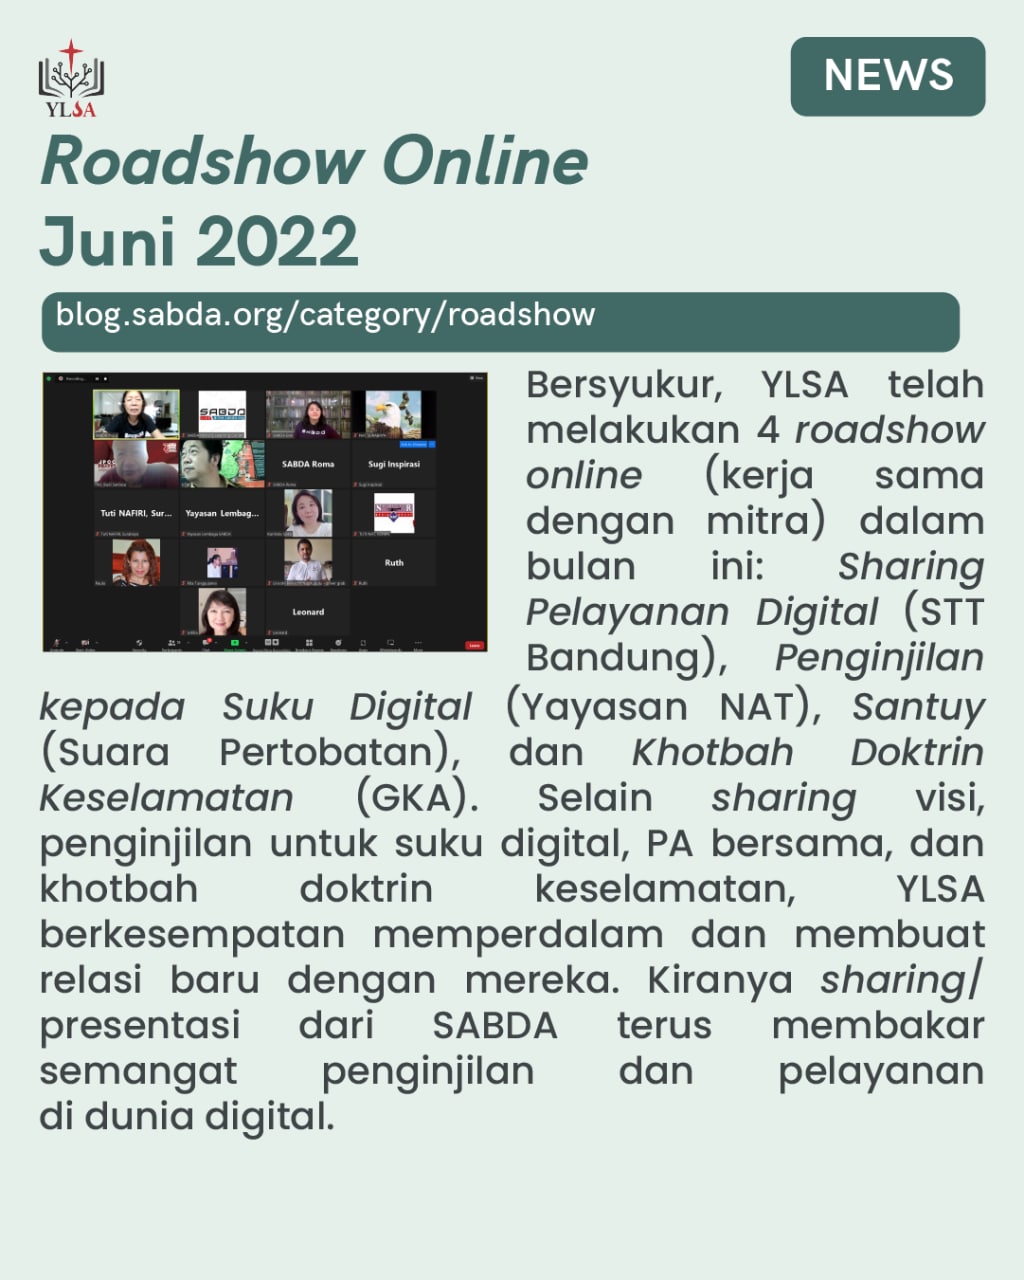 4 roadshow YLSA: Sharing Pelayanan Digital (STT Bandung), Penginjilan kepada Suku Digital (Yayasan NAT), Santuy (Suara Pertobatan), dan Khotbah Doktrin Keselamatan (GKA).